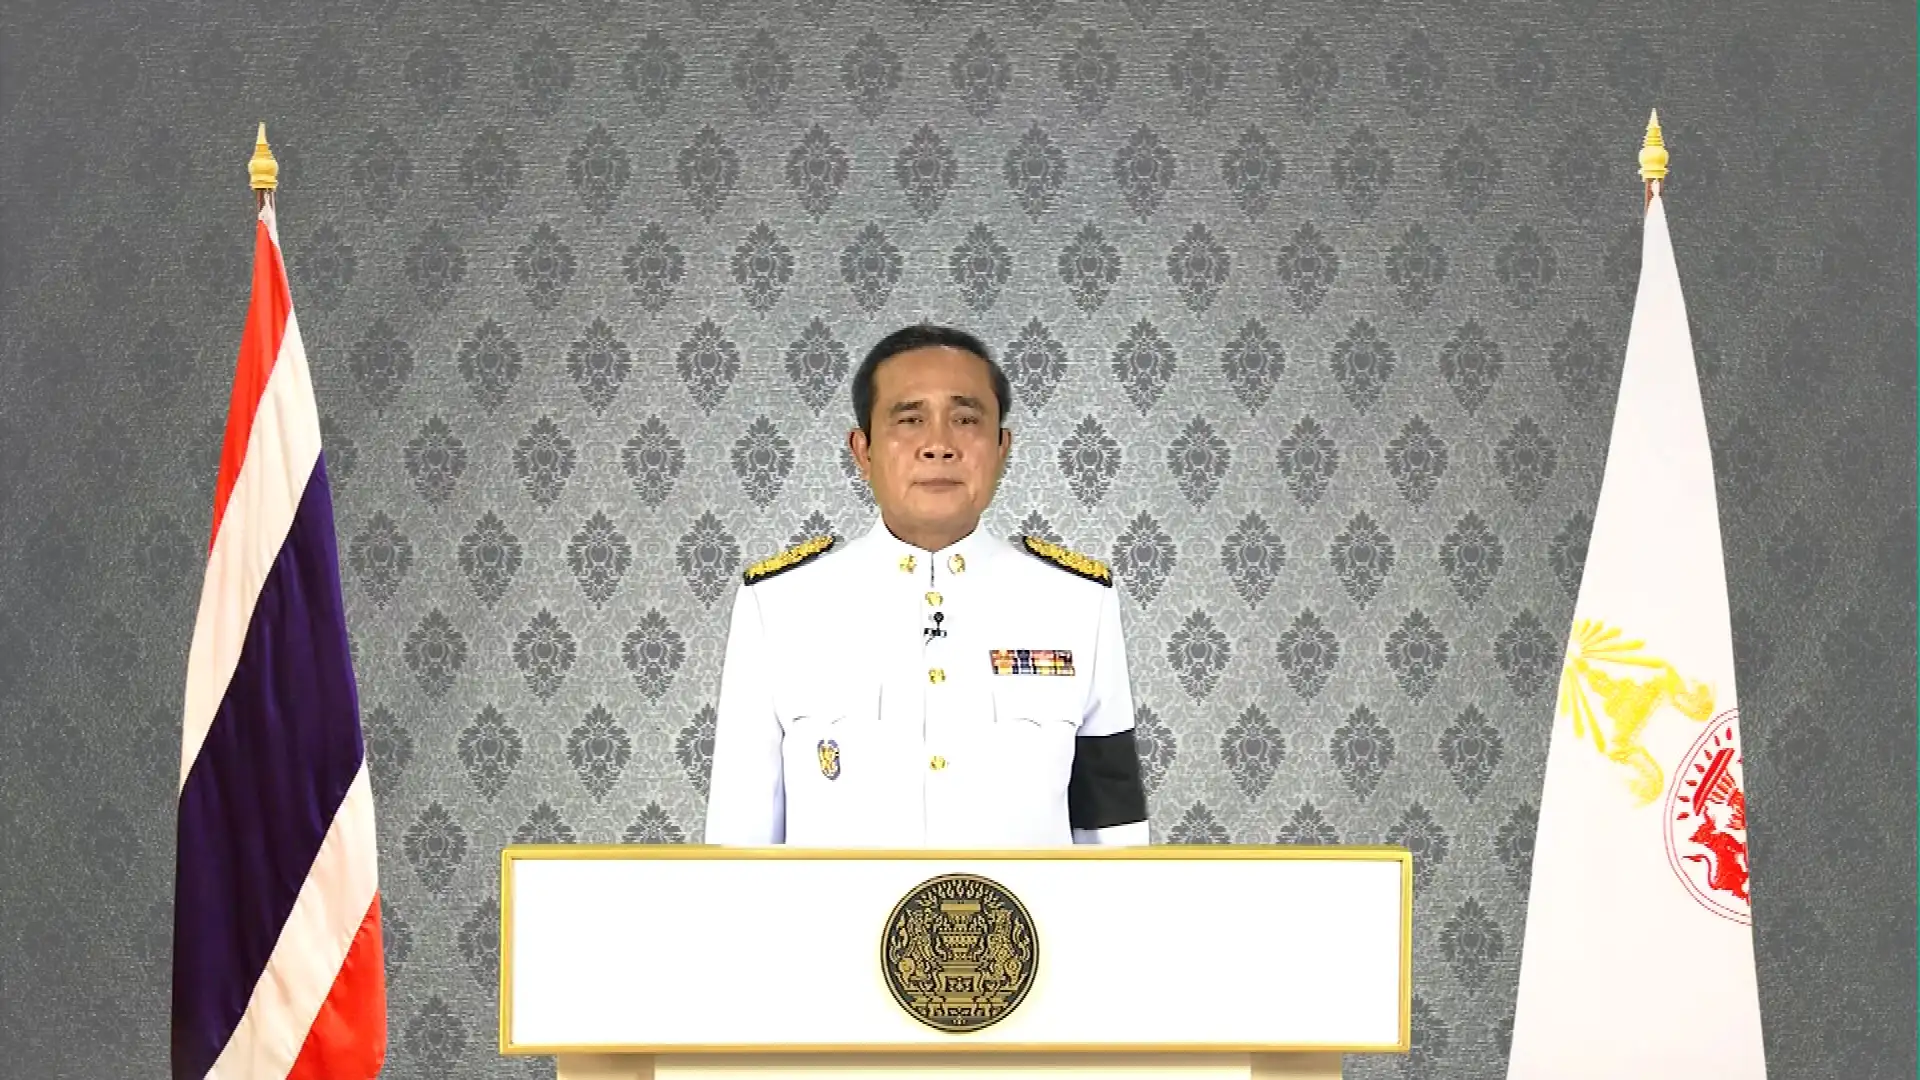 นายกฯเผย สมเด็จพระบรมโอรสาธิราชฯ ทรงห่วงใยประชาชนชาวไทย